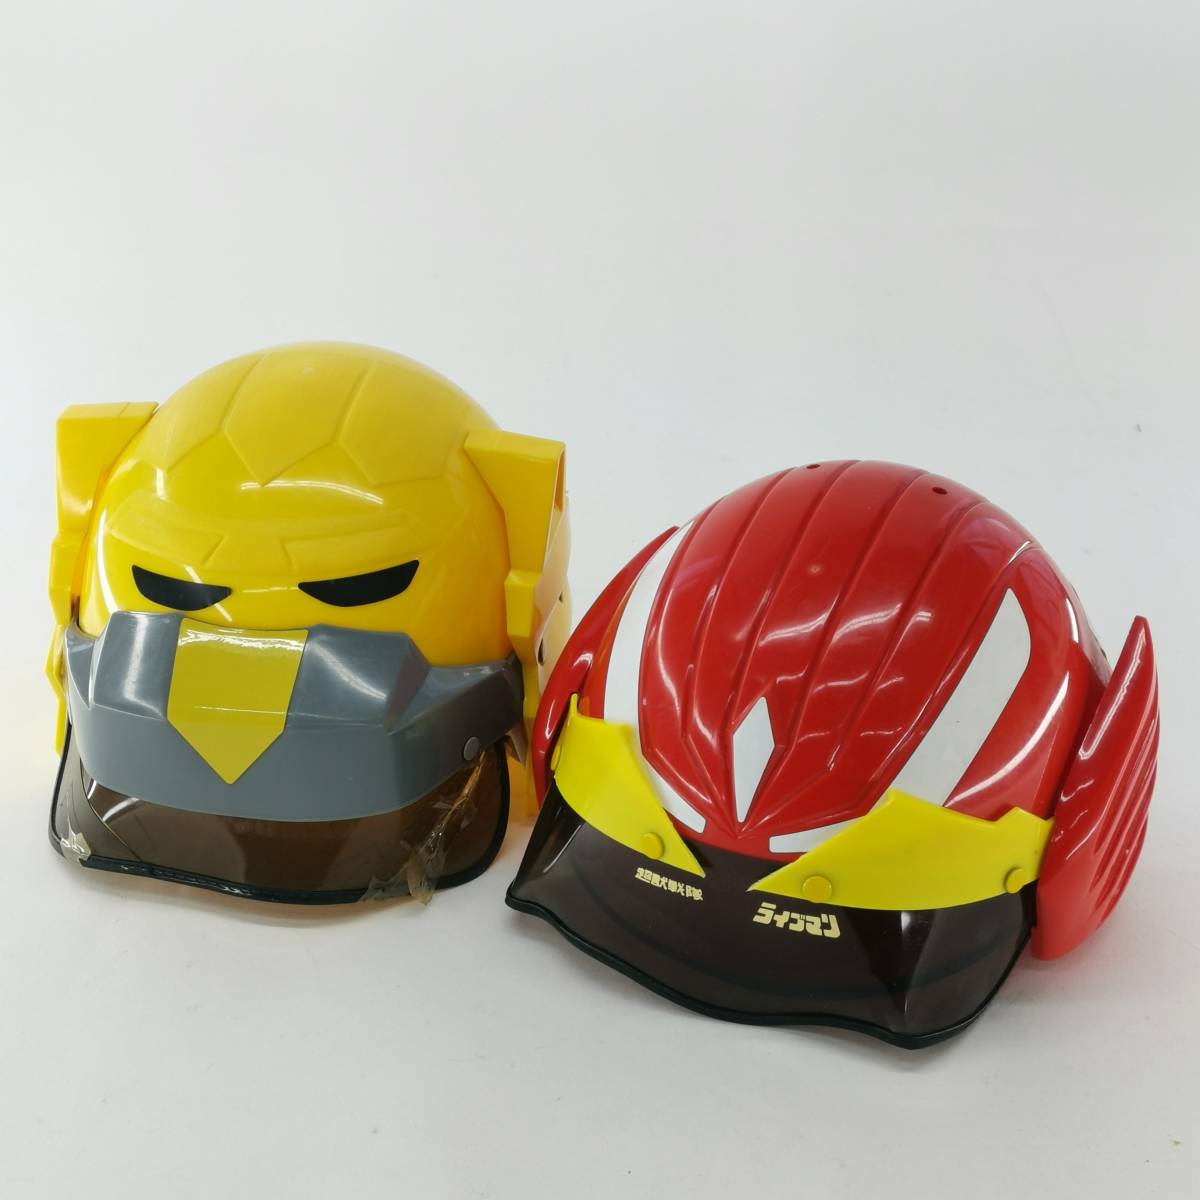  бесплатная доставка BANDAI Bandai Choujuu Sentai Liveman красный Falcon желтый лев шлем 2 шт. комплект Squadron герой текущее состояние товар #12242